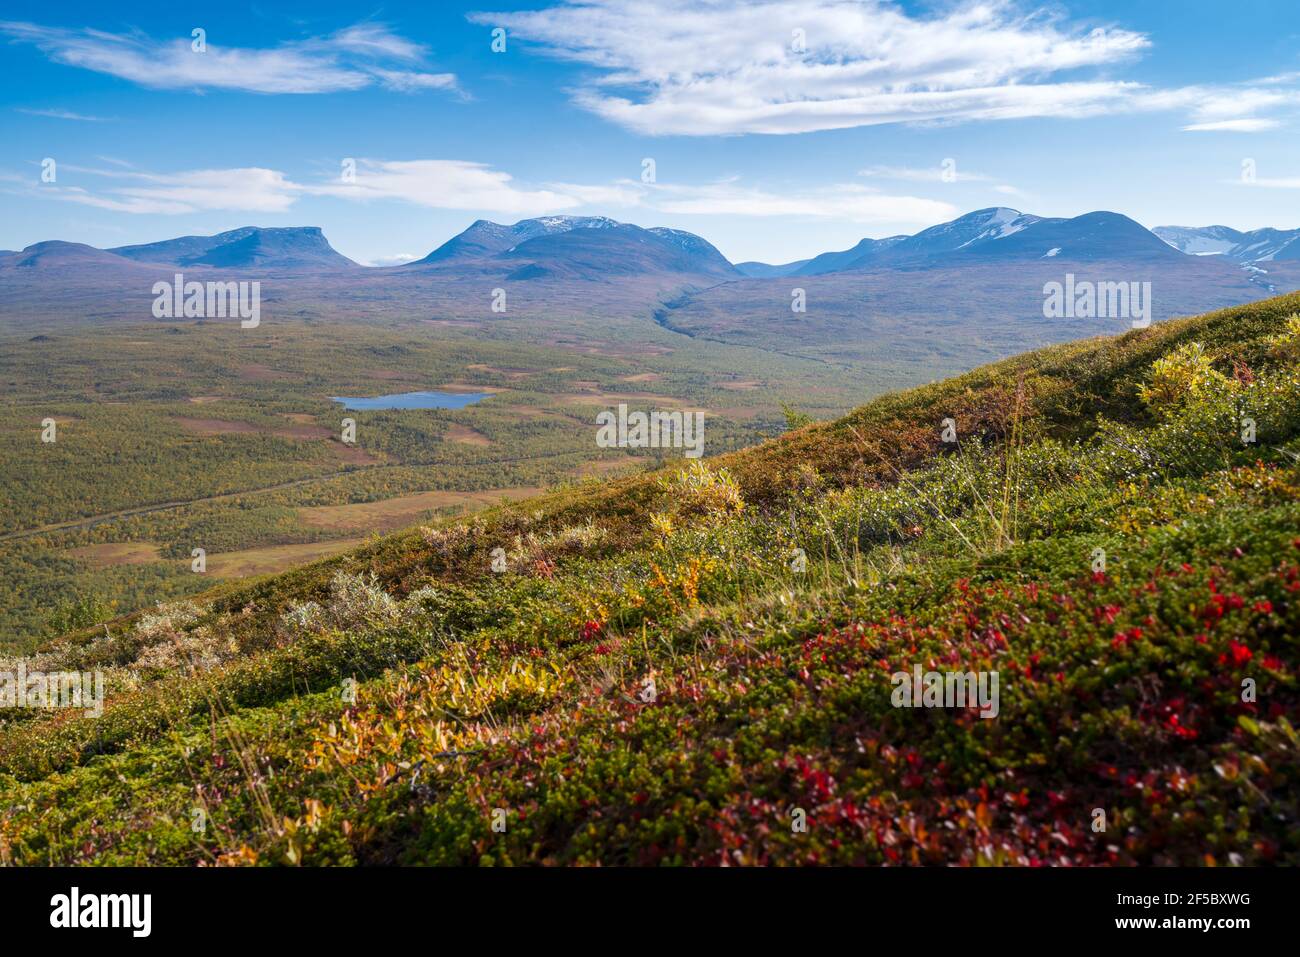 Lapponisches Tor, berühmter Gebirgspass in der schwedischen Arktis in schönen Herbstfarben an einem sonnigen Tag. Blick von Nuolja, Njulla Berg. Wandern in Stockfoto